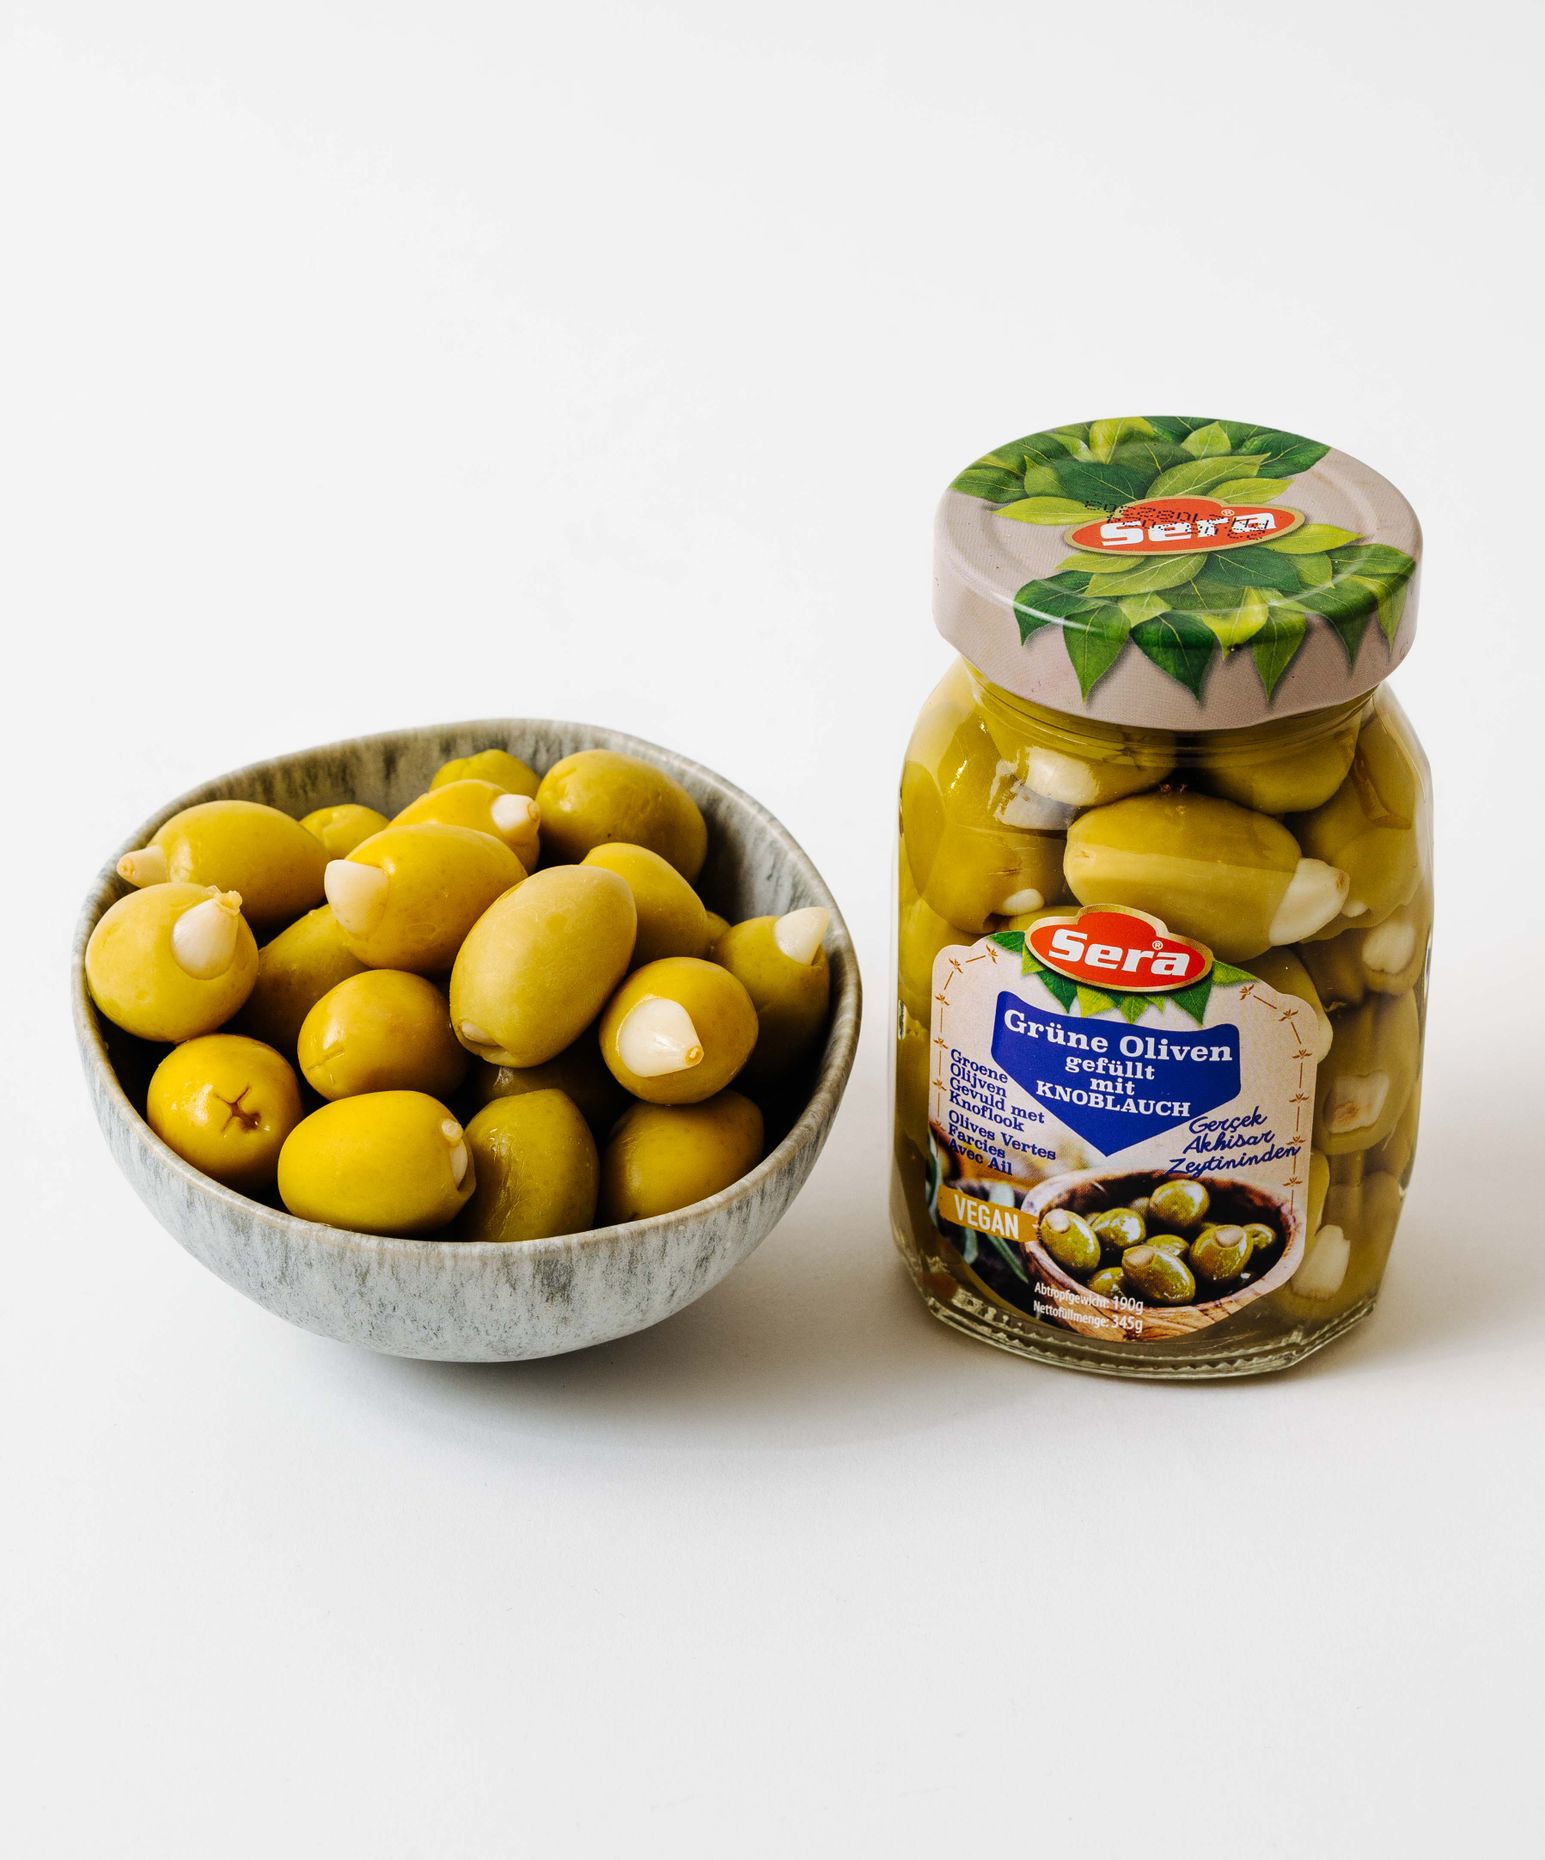 Sera Green Olives with Garlic